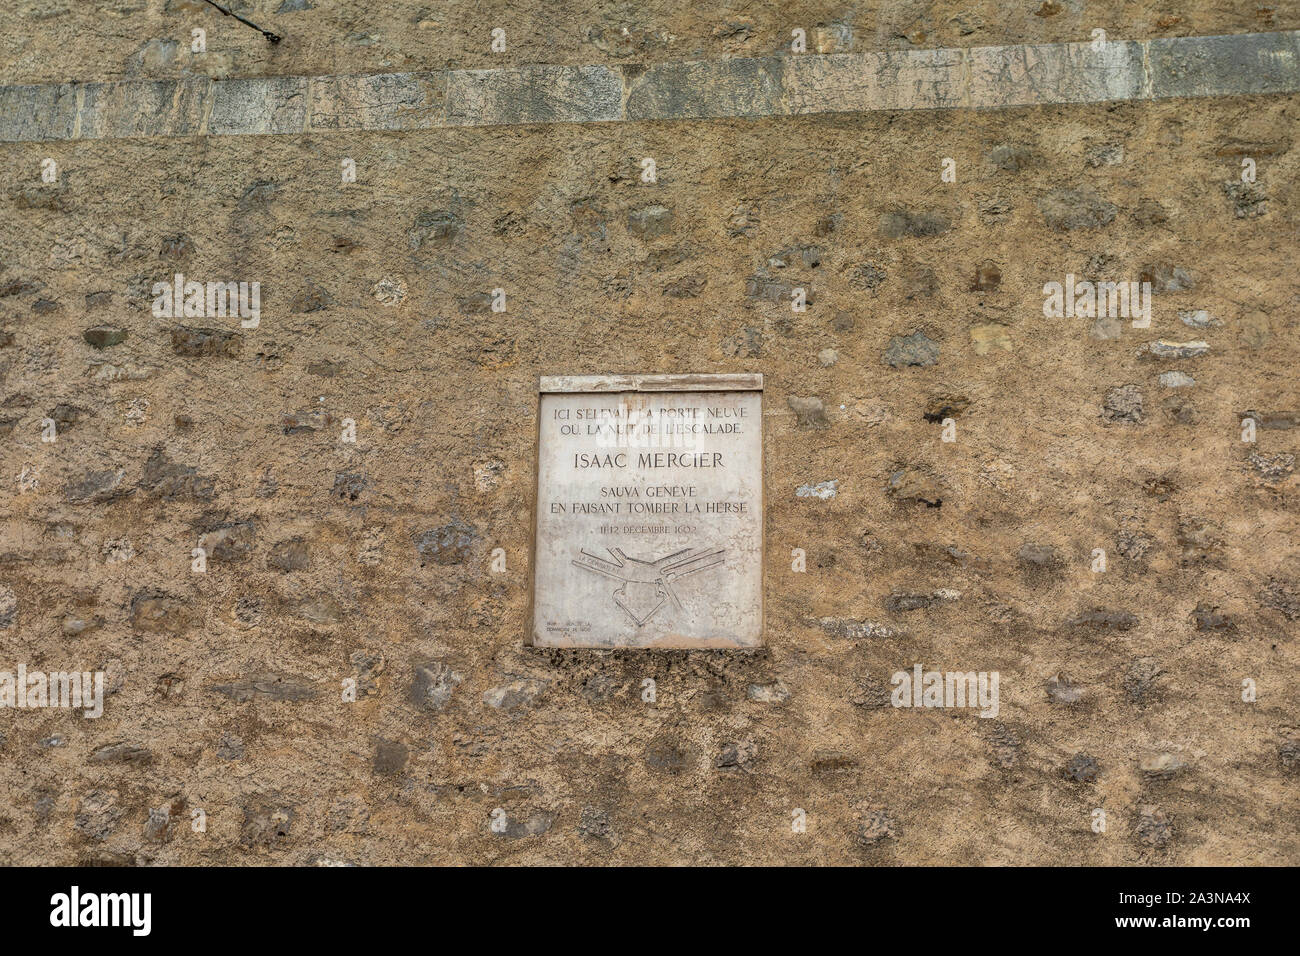 Commemorative plaque located at Rampe de la Treille Genève, Geneva Switzerland recalling the heroic act of Isaac Mercier Stock Photo